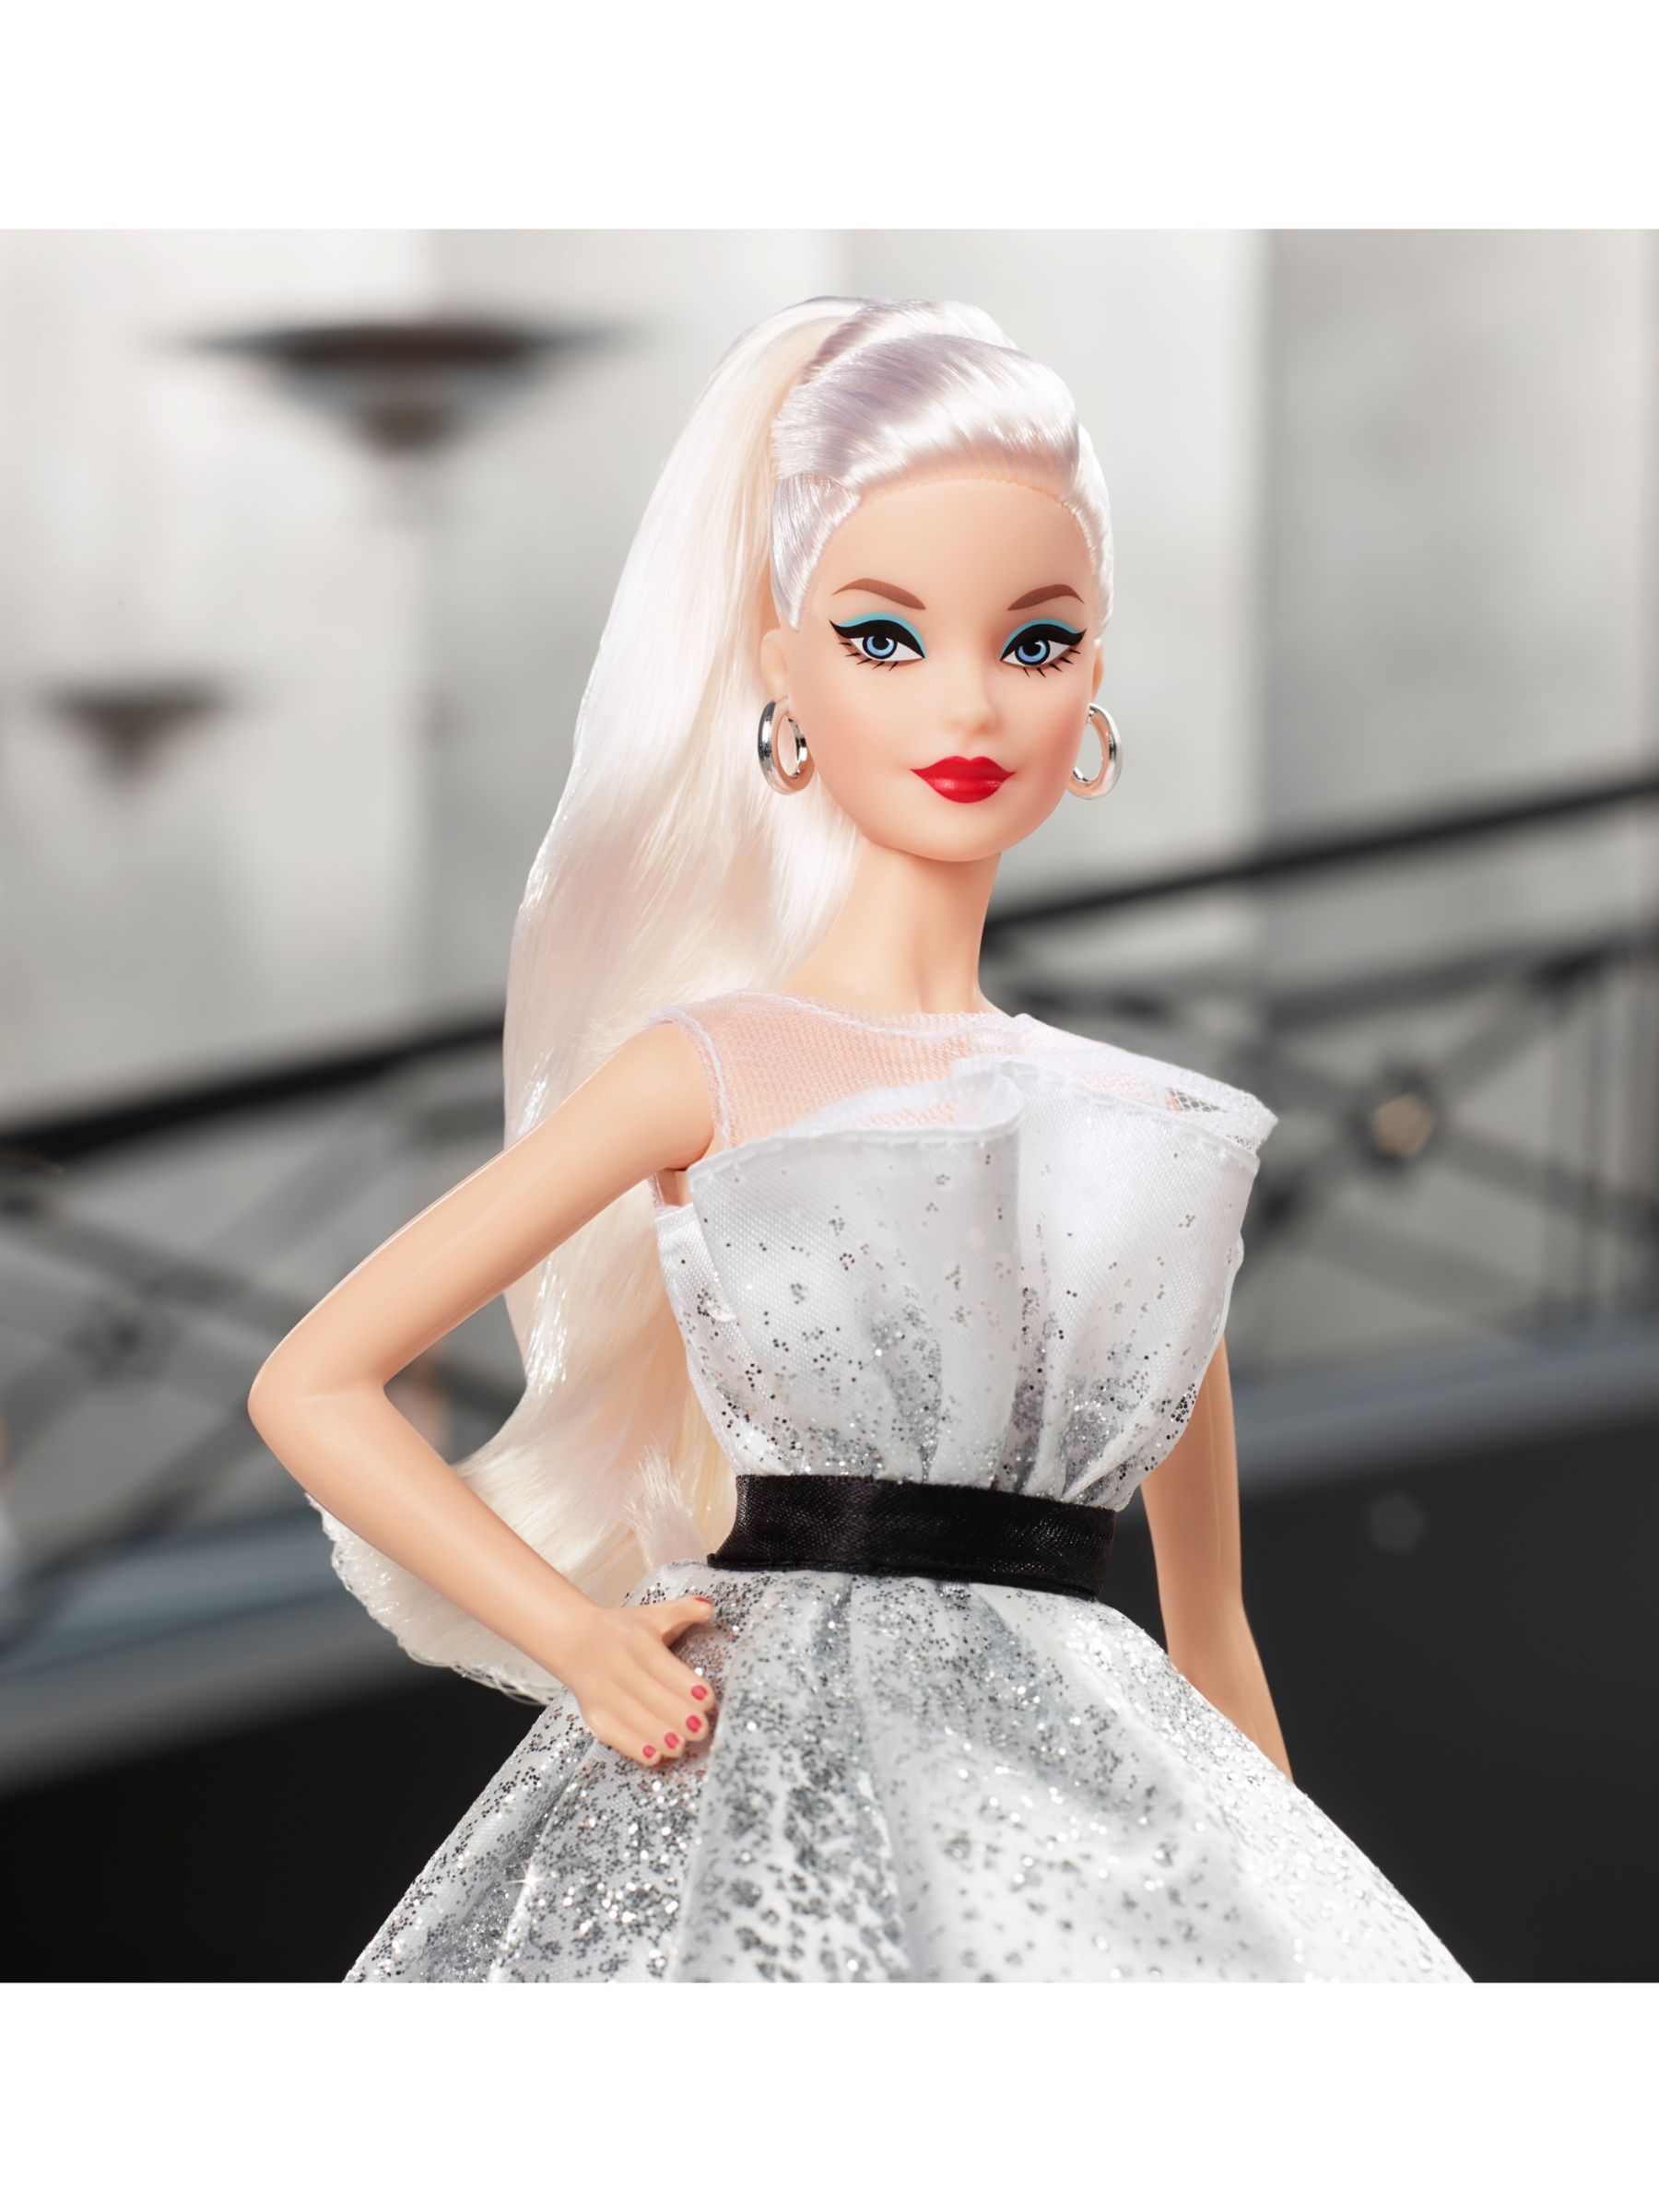 60th barbie doll